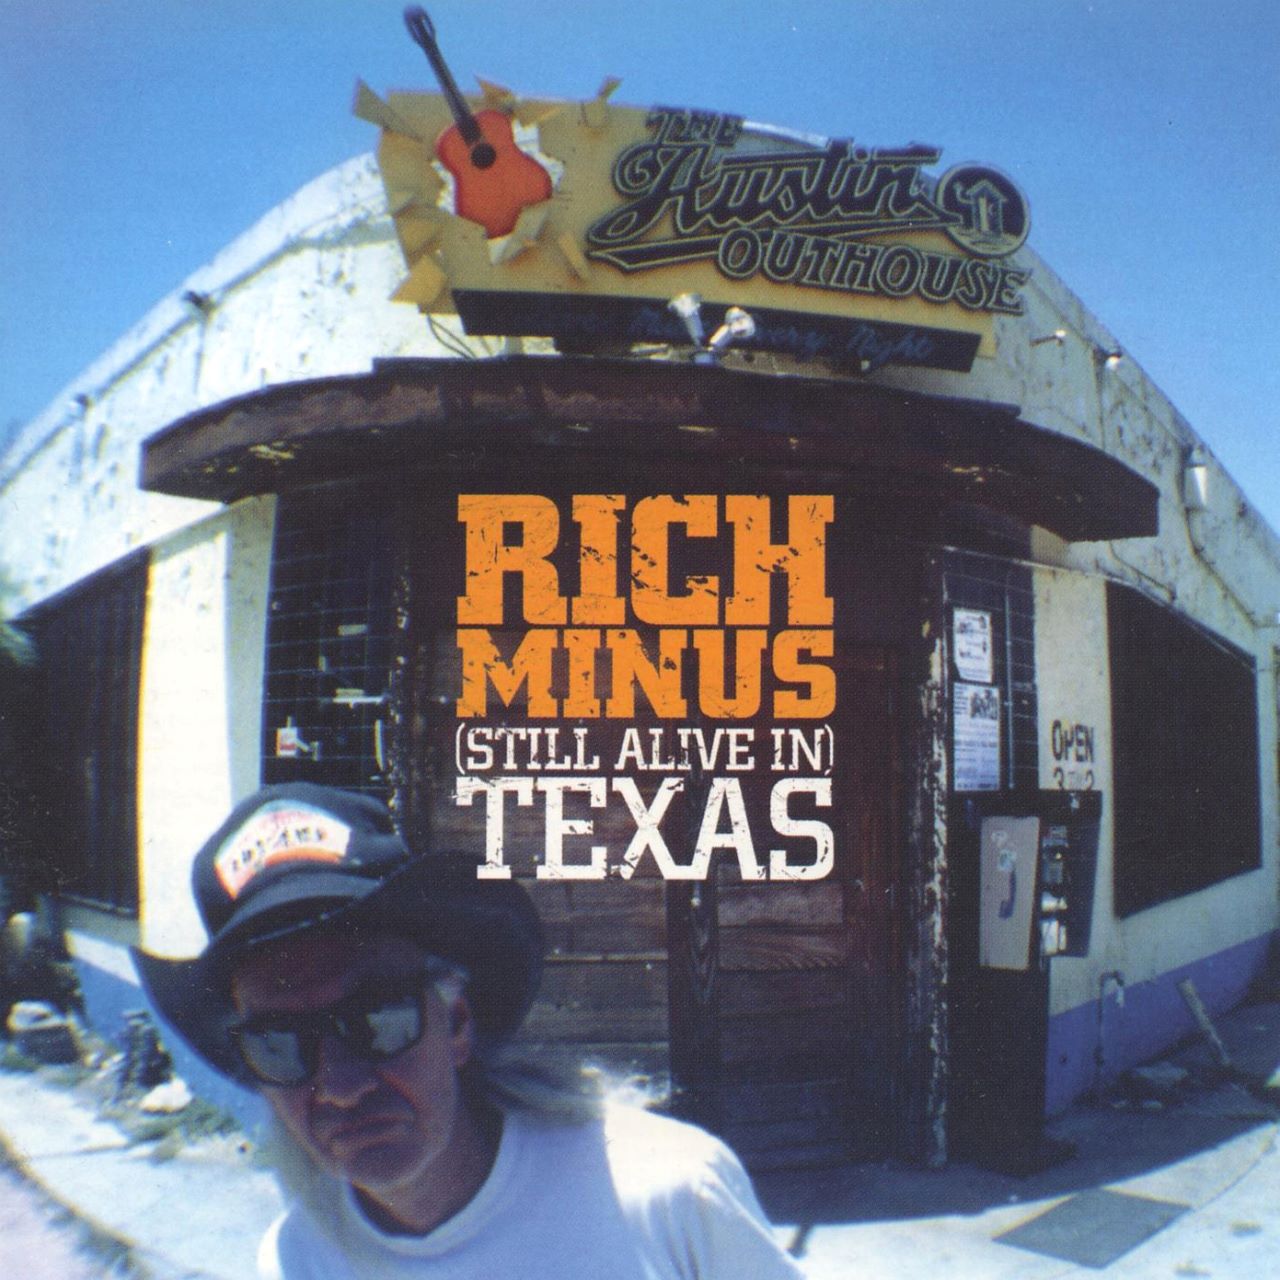 Rich Minus - (Still Alive In) Texas cover album